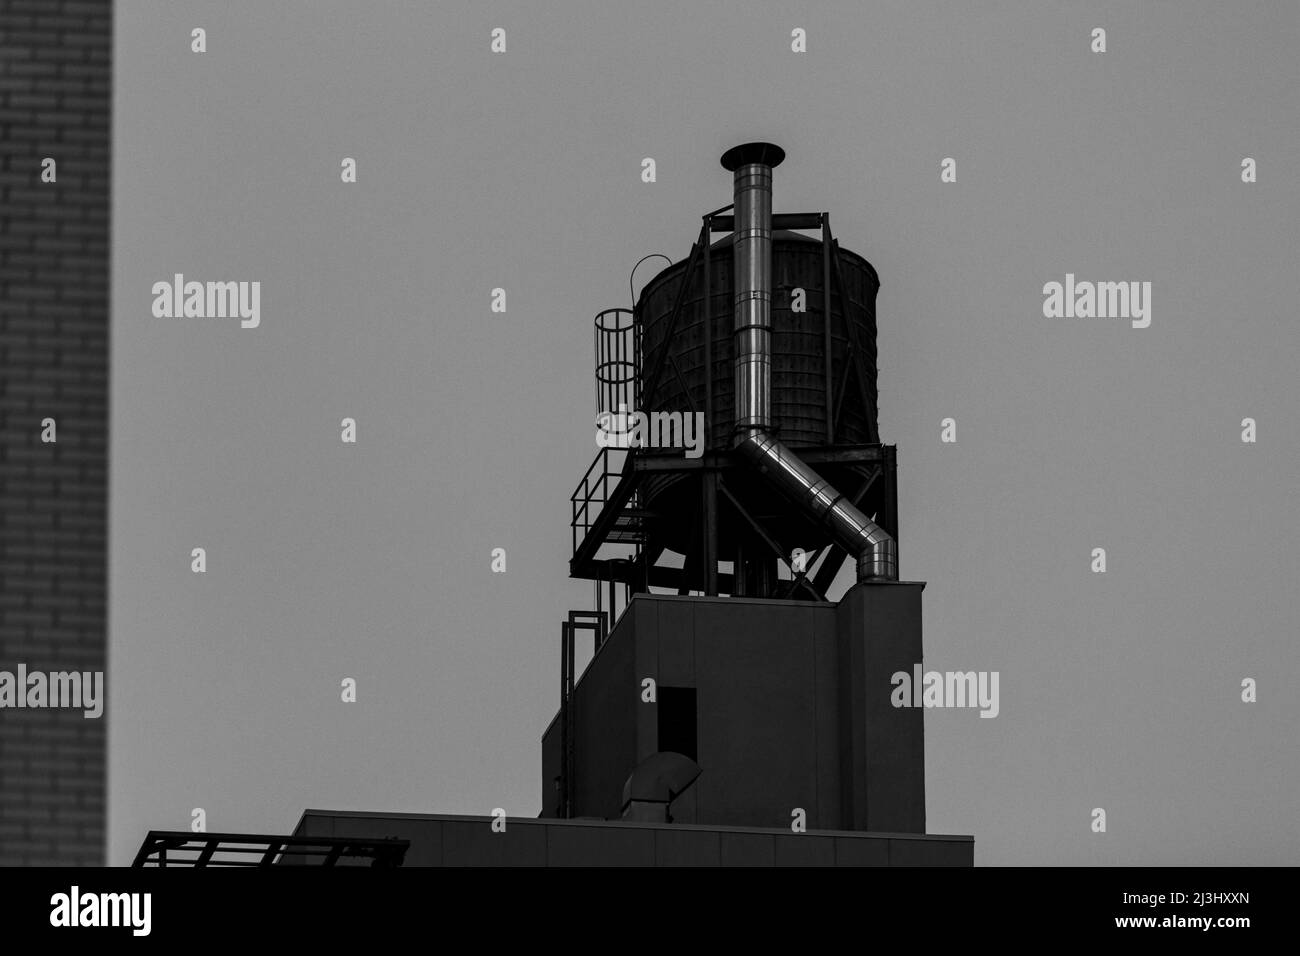 FULTON ST, New York City, NY, États-Unis, Un réservoir d'eau sur le toit d'un immeuble d'appartements à New York, contient de l'eau provenant des montagnes Catskill Banque D'Images